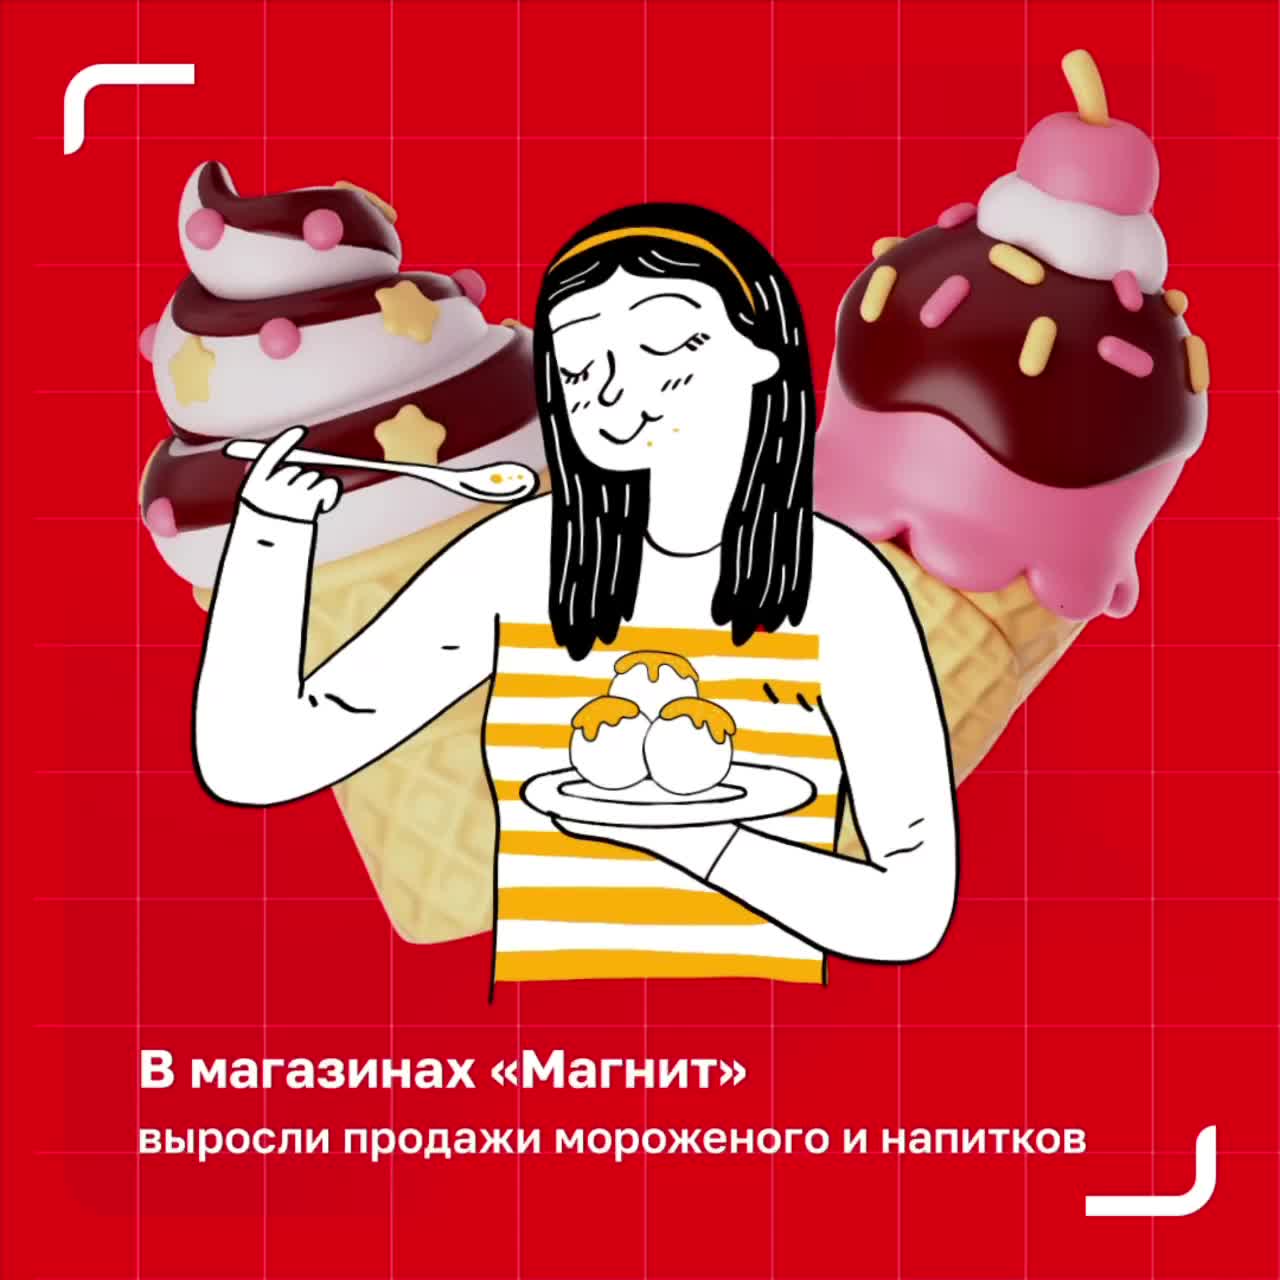 Рост популярности мороженого в Москве: анализ видов, цен и объема потребления